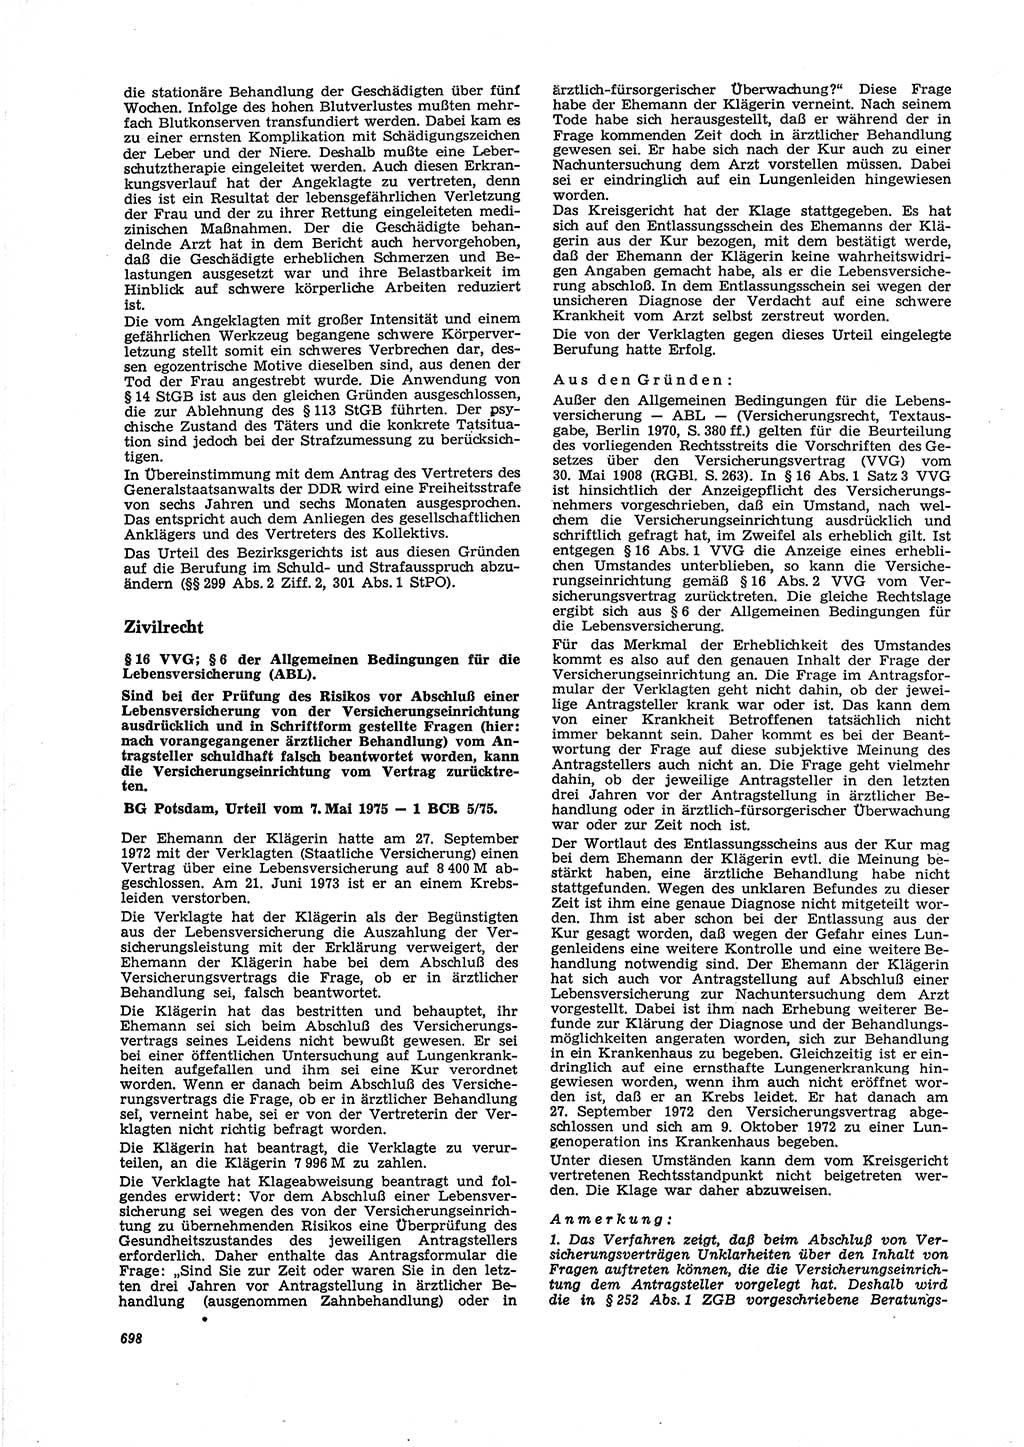 Neue Justiz (NJ), Zeitschrift für Recht und Rechtswissenschaft [Deutsche Demokratische Republik (DDR)], 29. Jahrgang 1975, Seite 698 (NJ DDR 1975, S. 698)